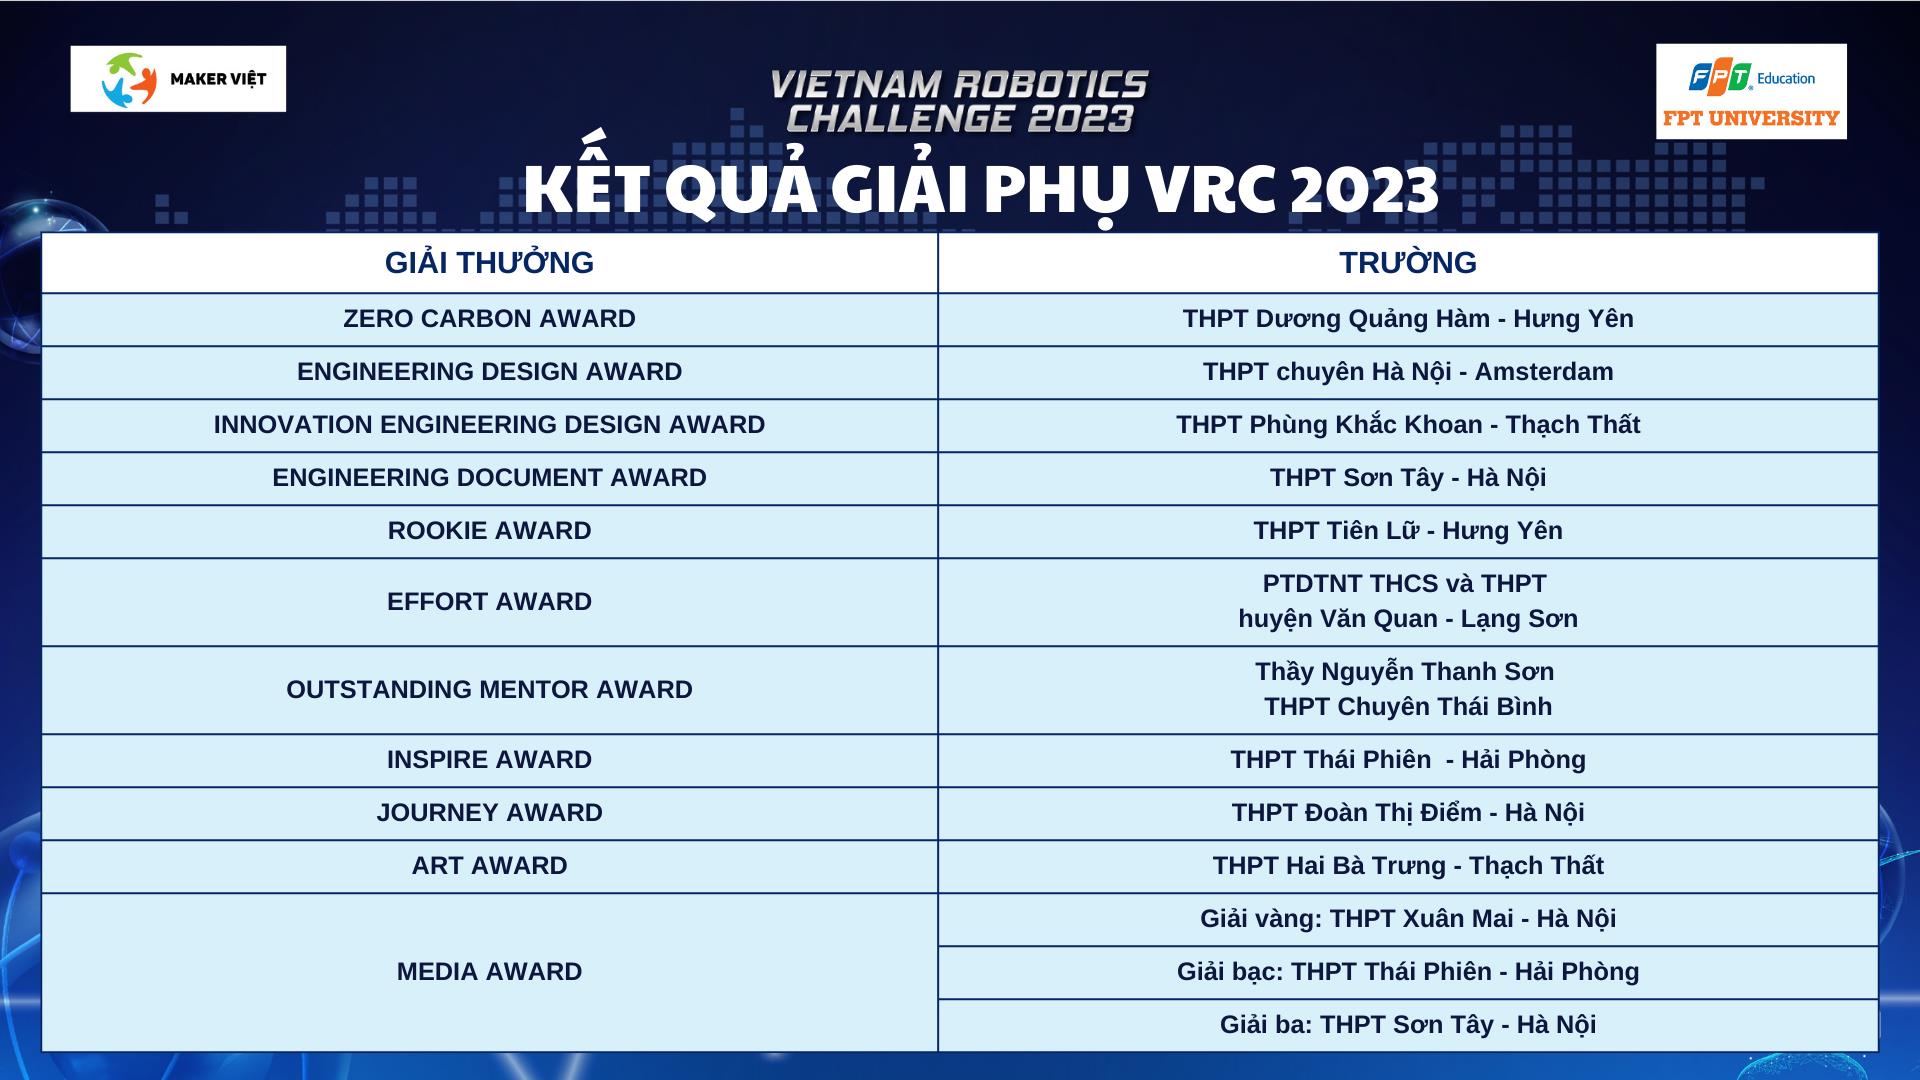 THPT Đoàn Thị Điểm và THPT Hai Bà Trưng - Thạch Thất nâng cúp vô địch Vietnam Robotics Challenge 2023 - Ảnh 5.